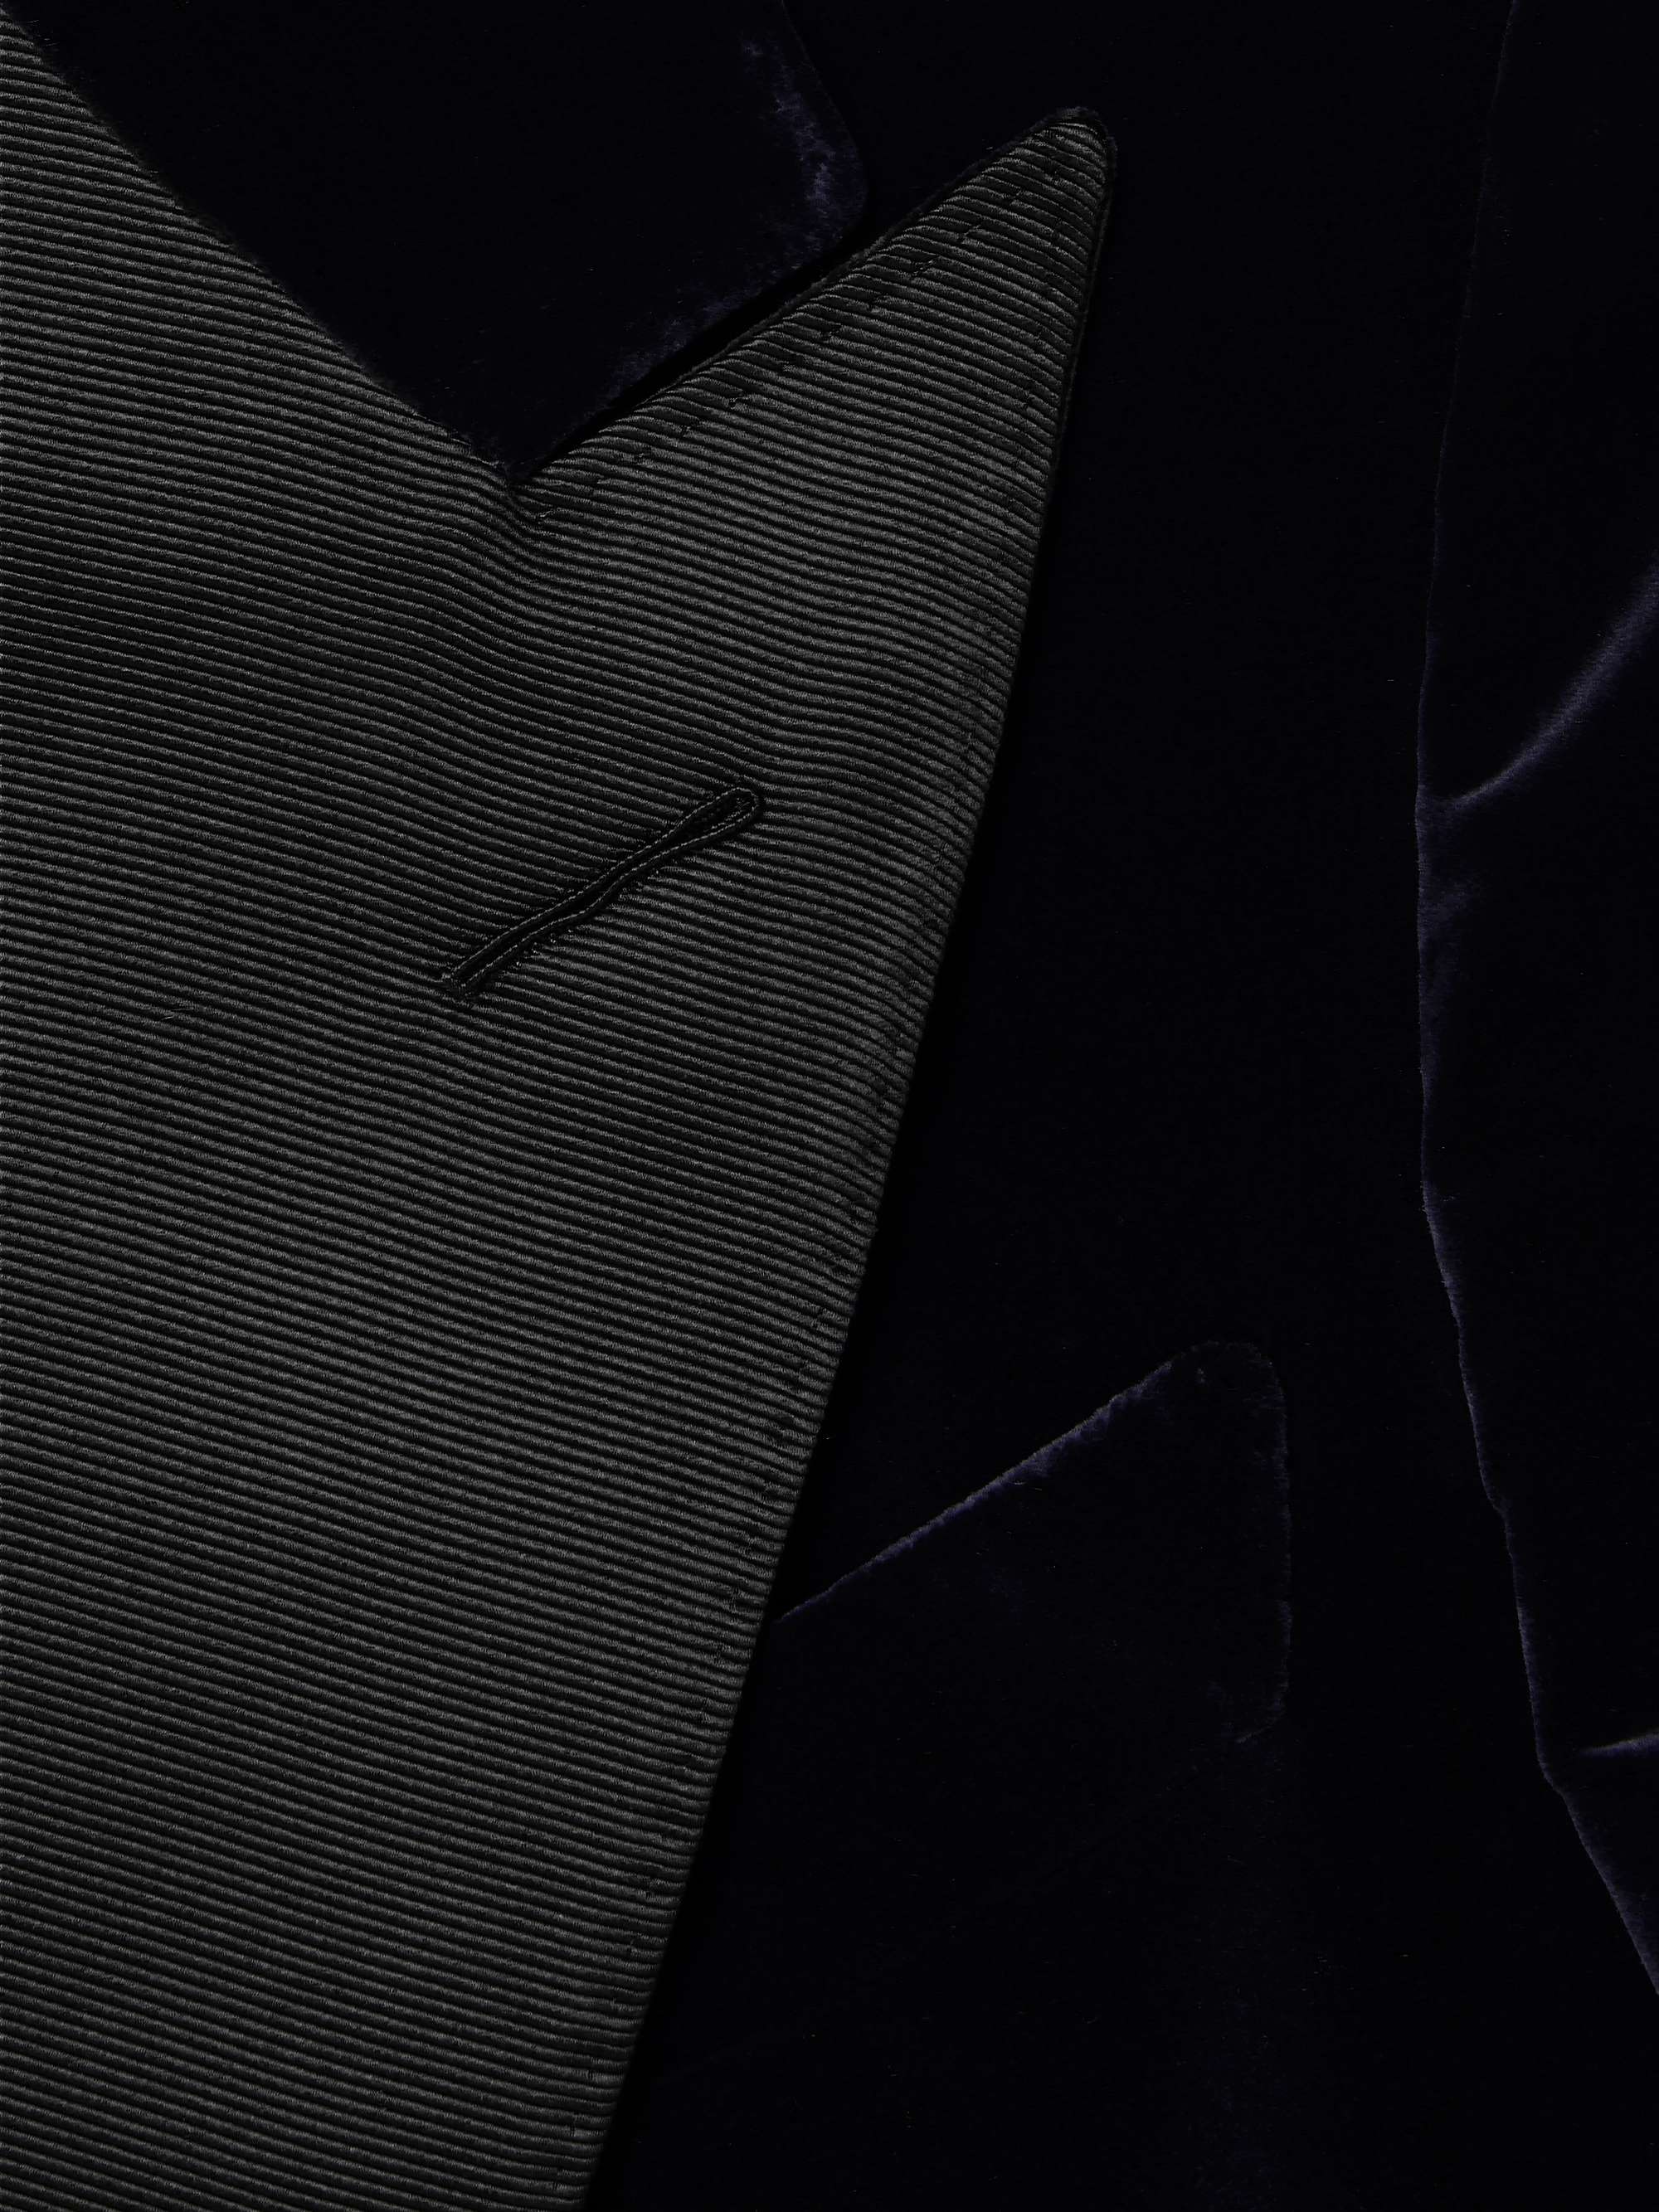 TOM FORD Shelton Slim-Fit Velvet Tuxedo Jacket